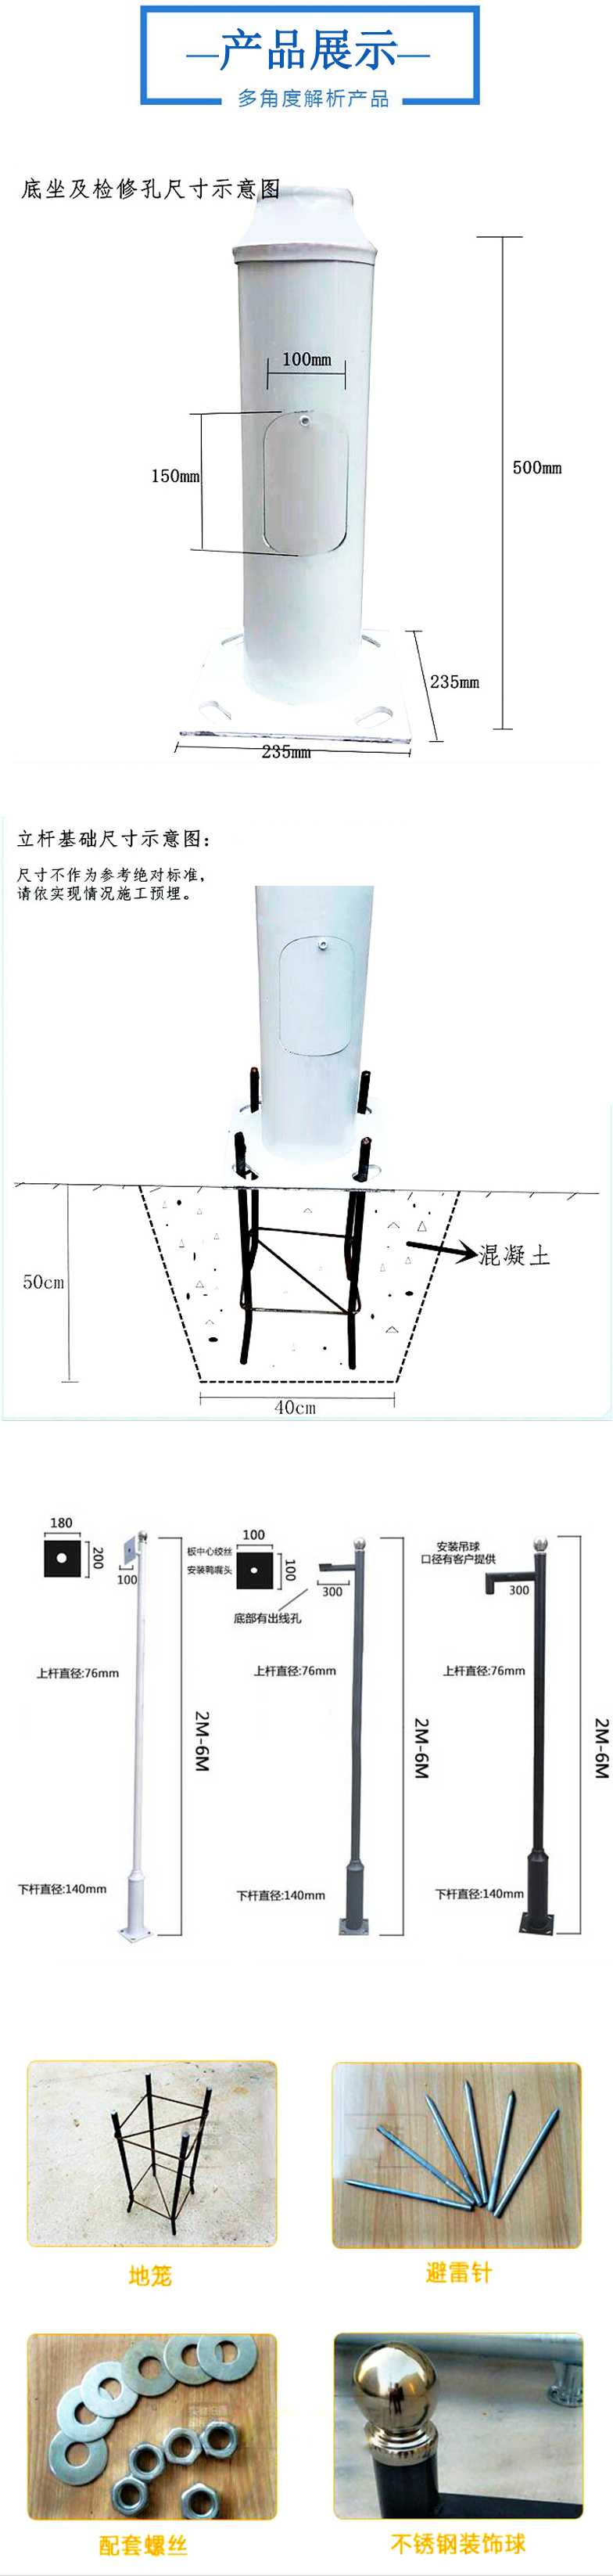 海康威视专业监控器材配件 立杆地笼